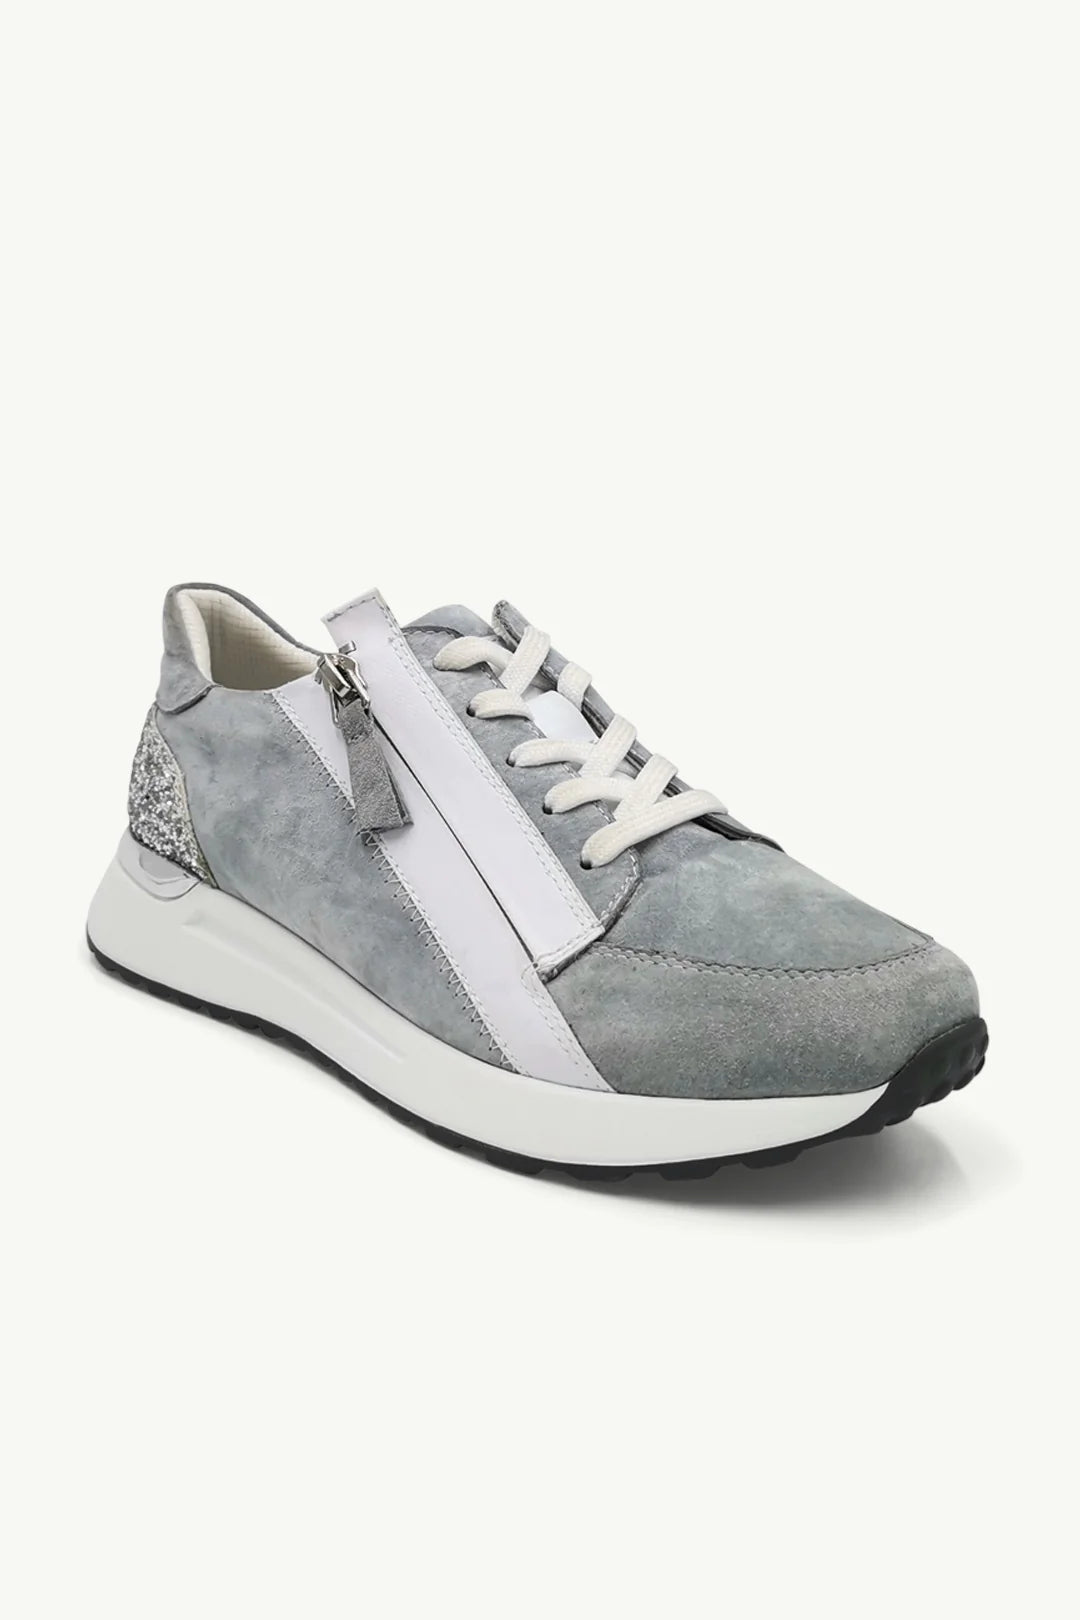 Luke - Blue Grey Sneaker